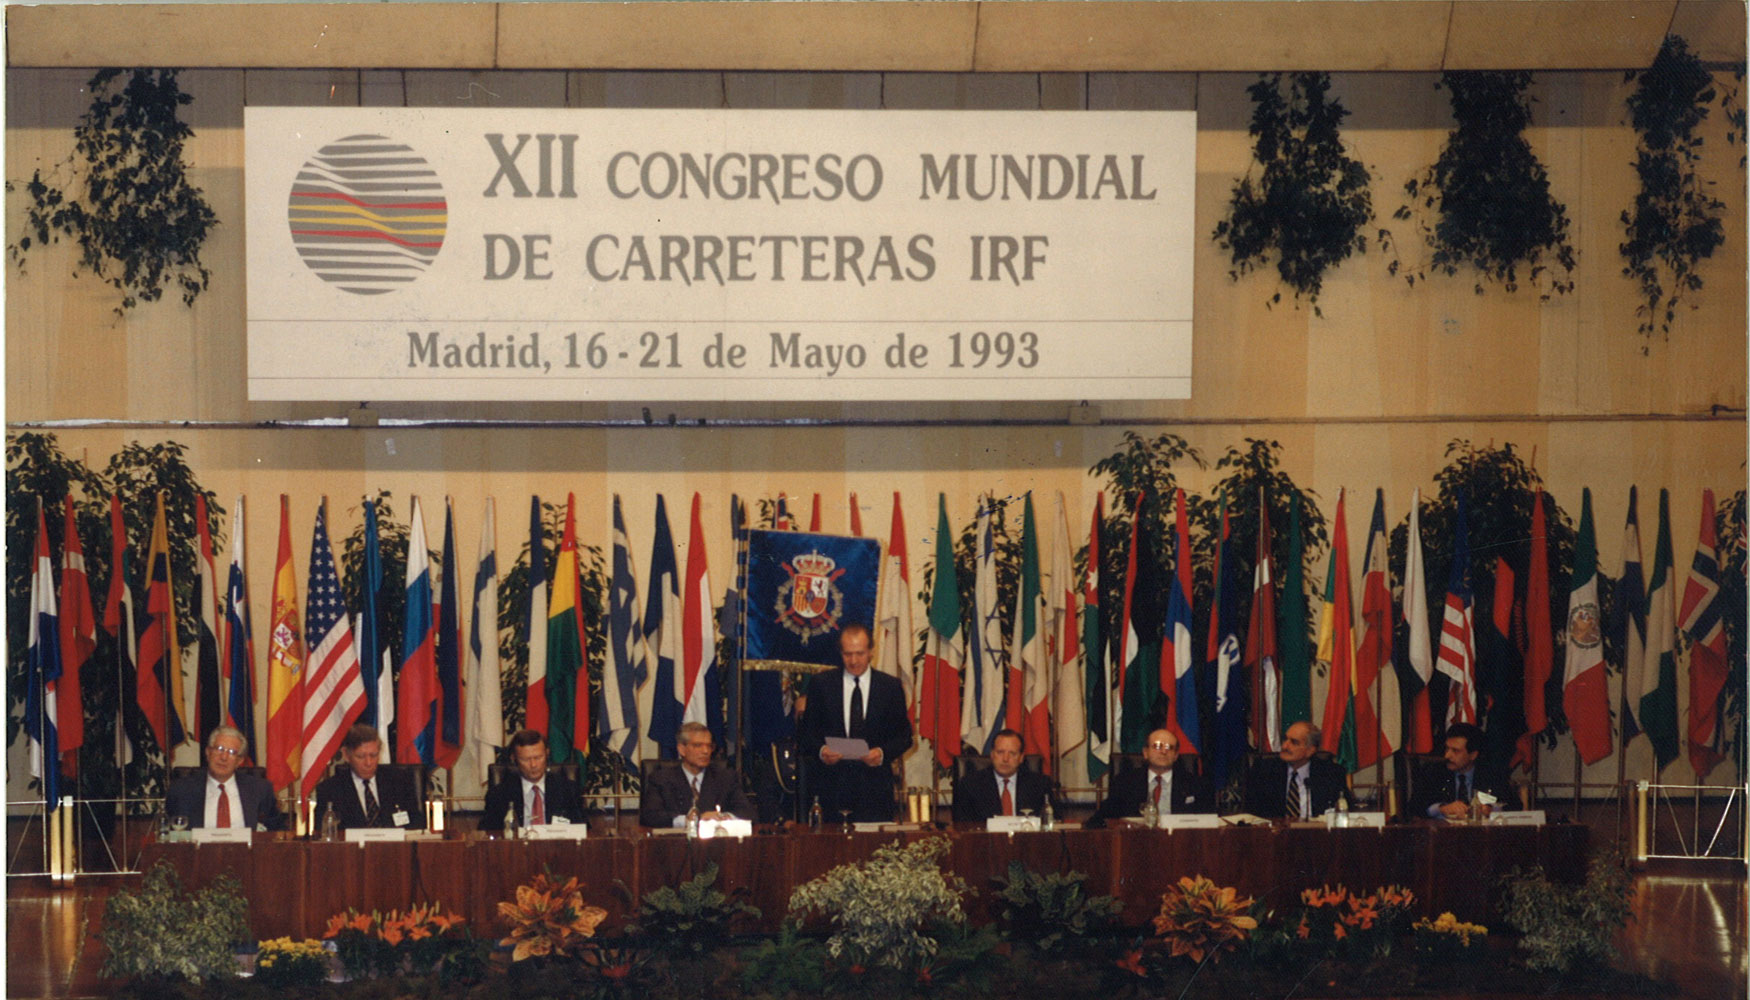 XII Congreso Mundial de Carreteras de Madrid 1992 - organizado por AEC. El Rey inaugur este encuentro en el Palacio de Congresos de Madrid...